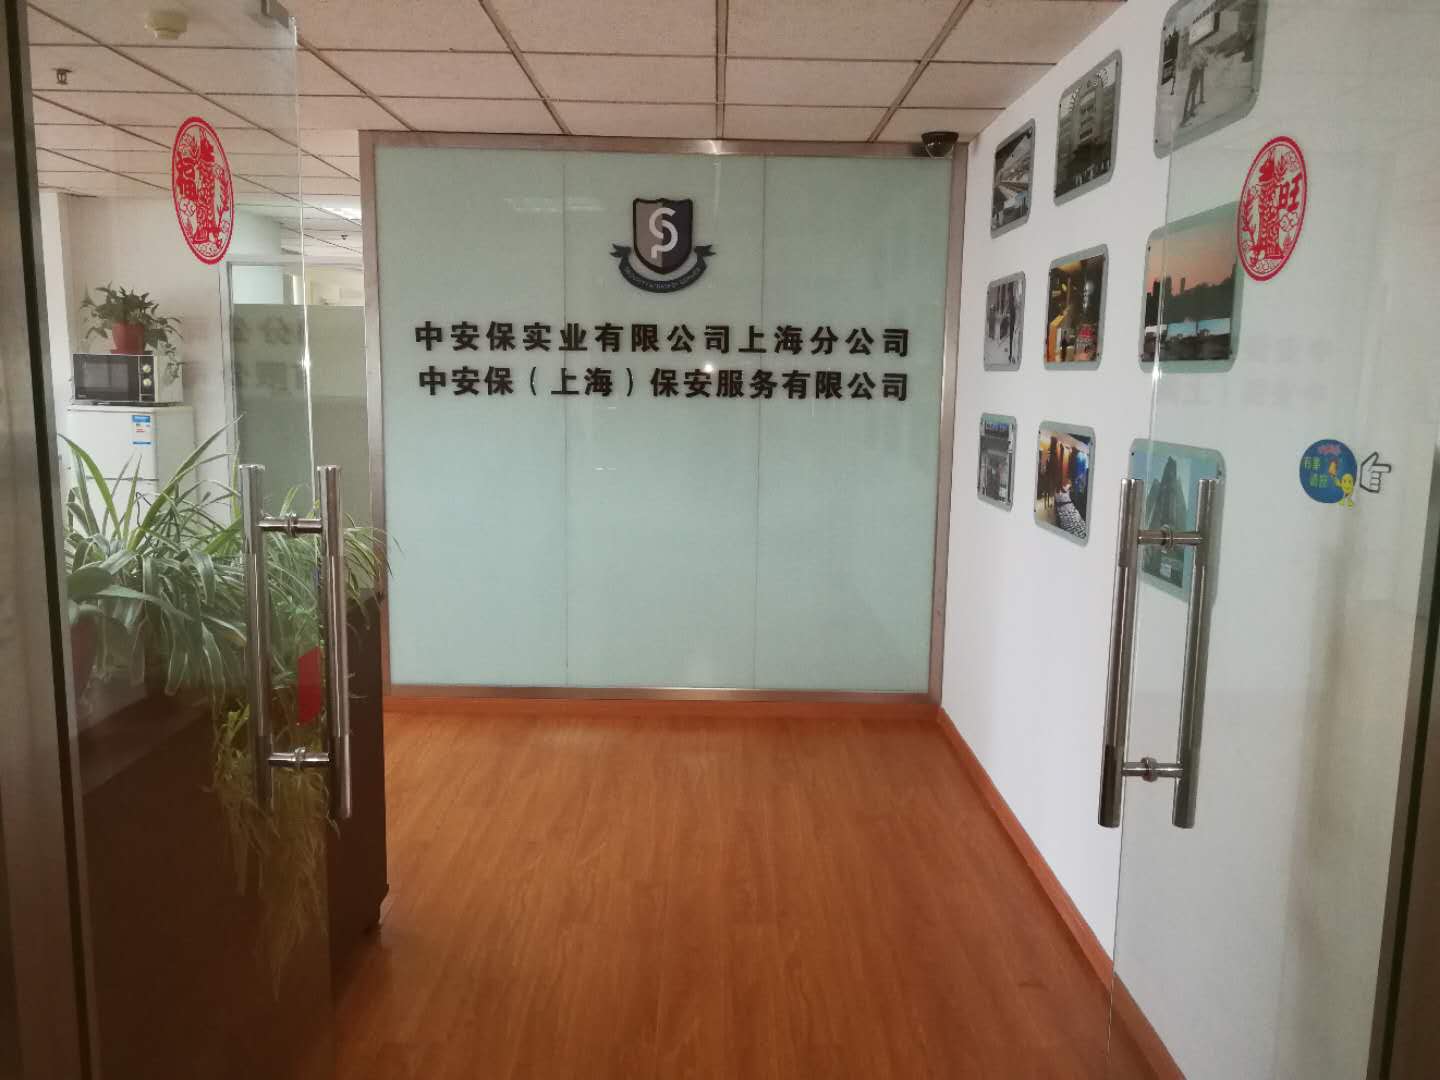 中安保（上海）保安服务有限公司喜迁新址